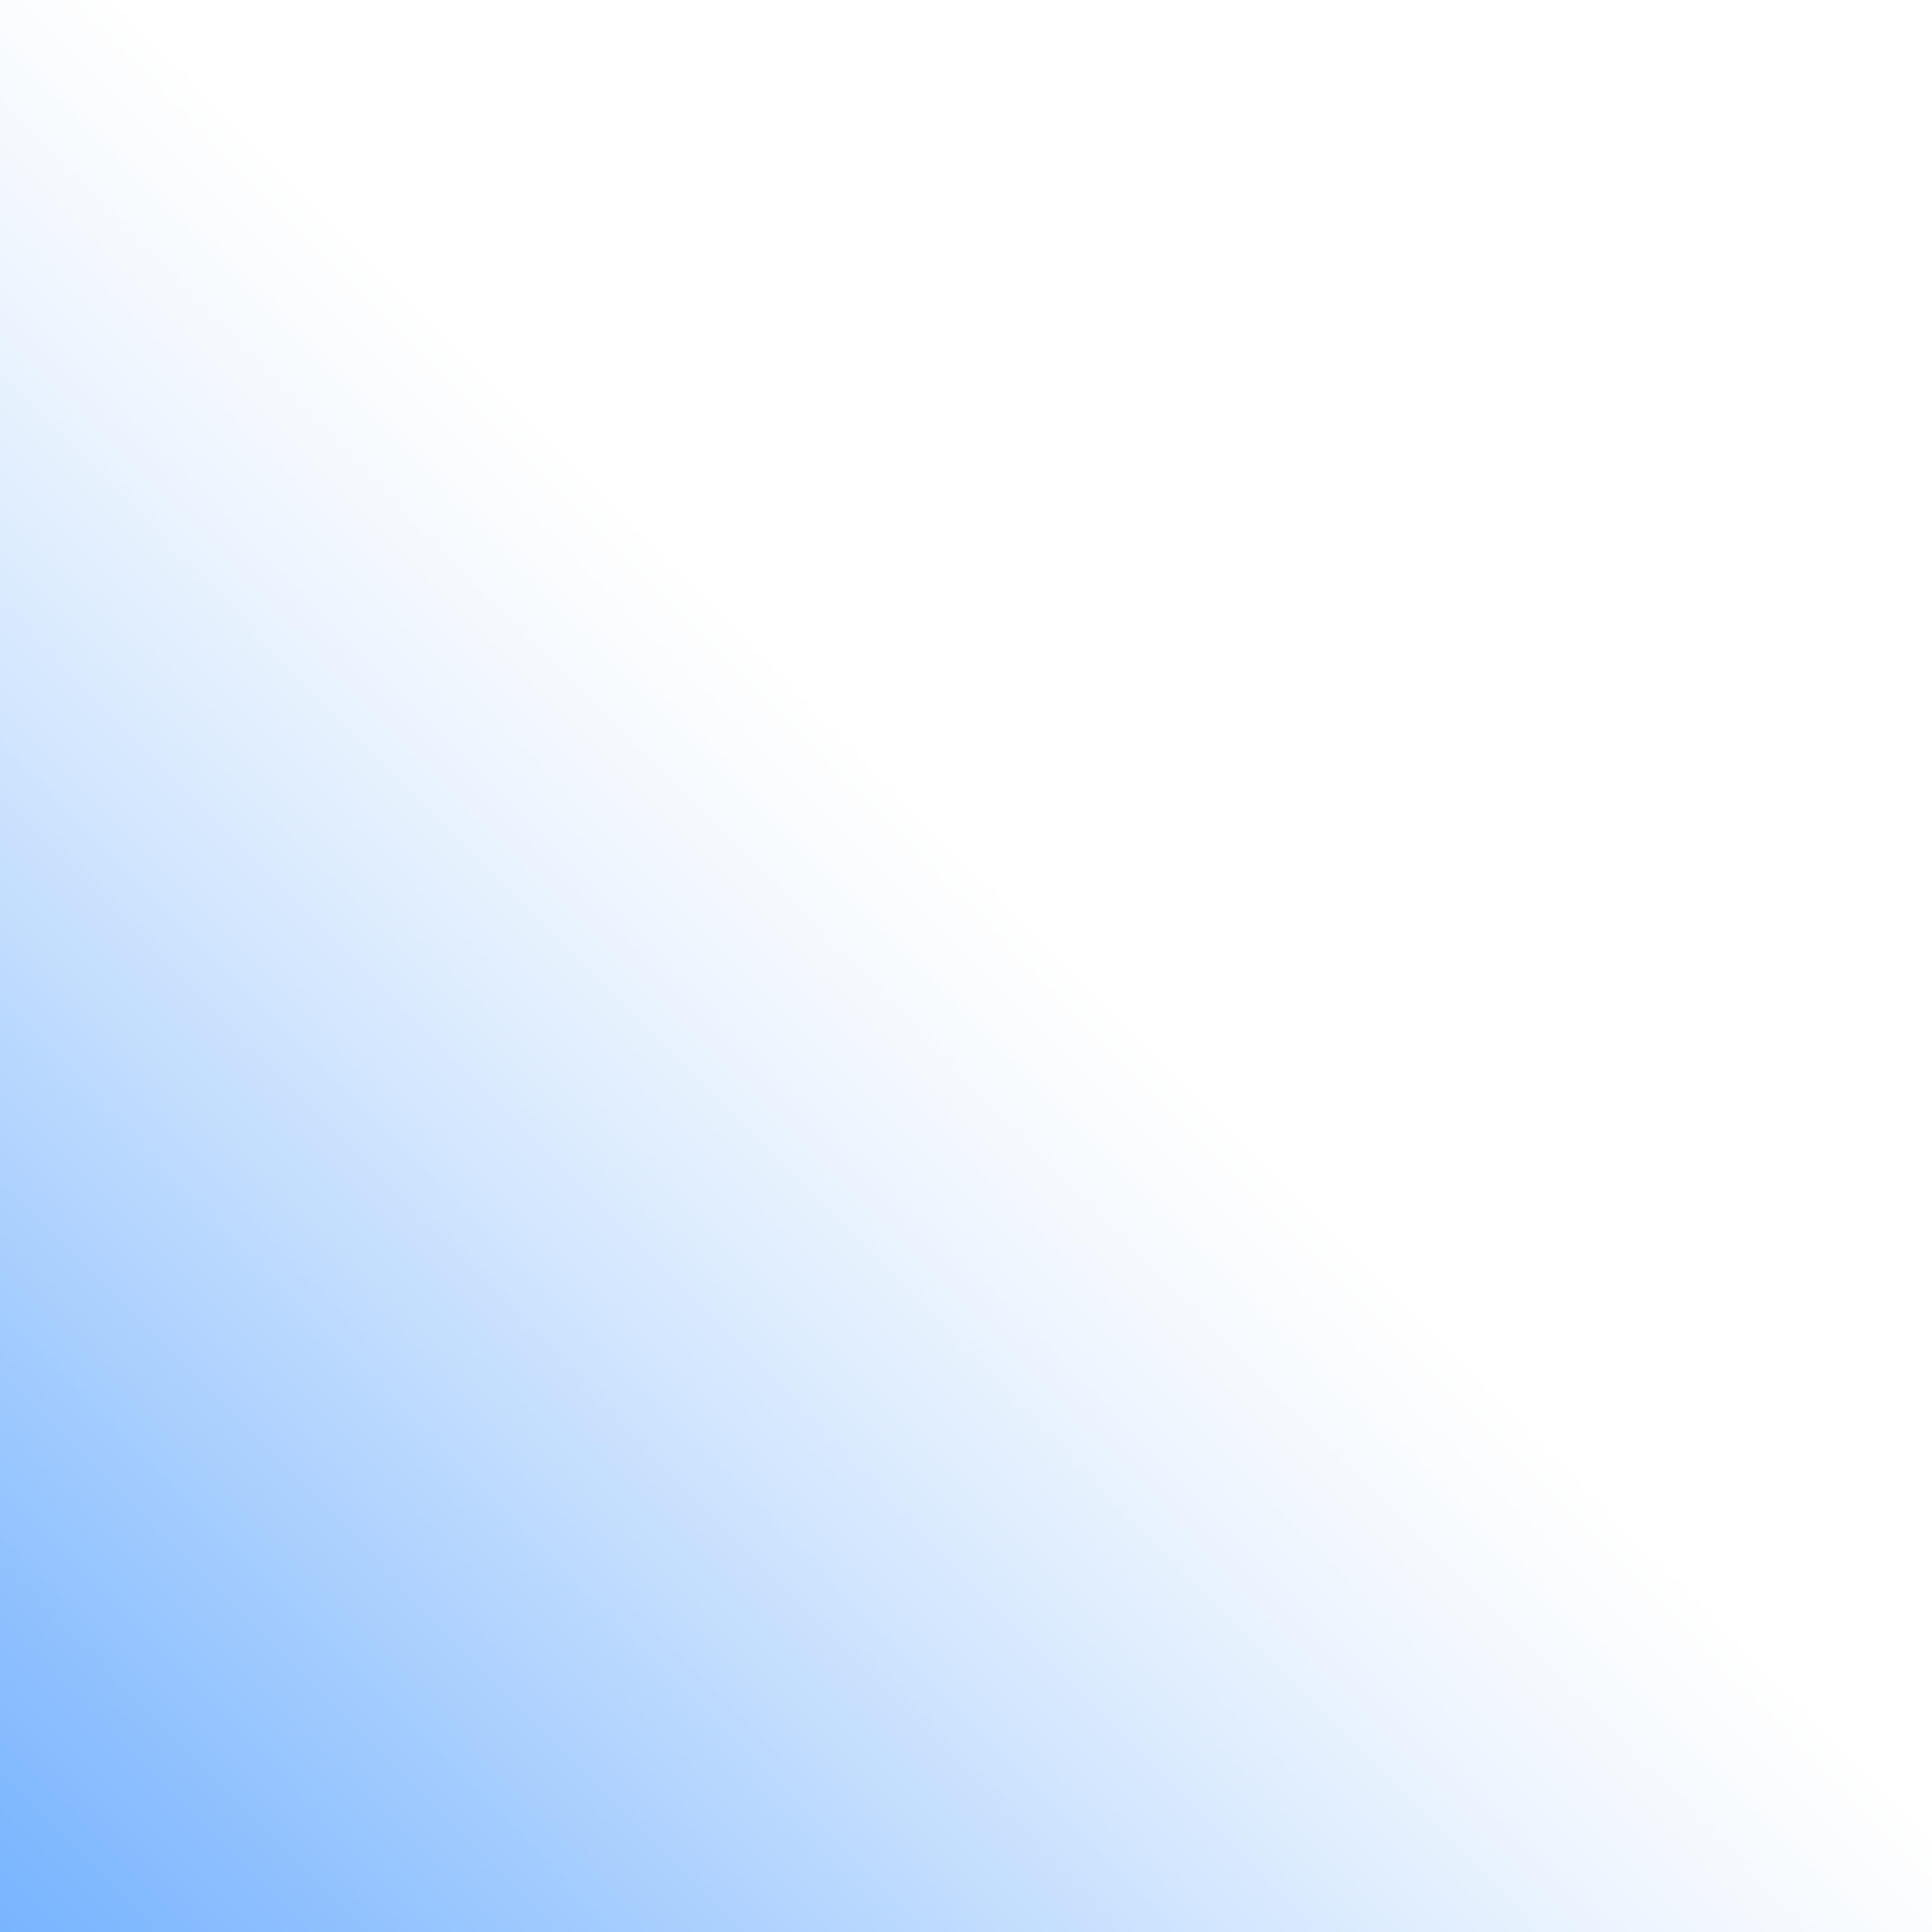 vecteezy_blue corner gradient_21103619